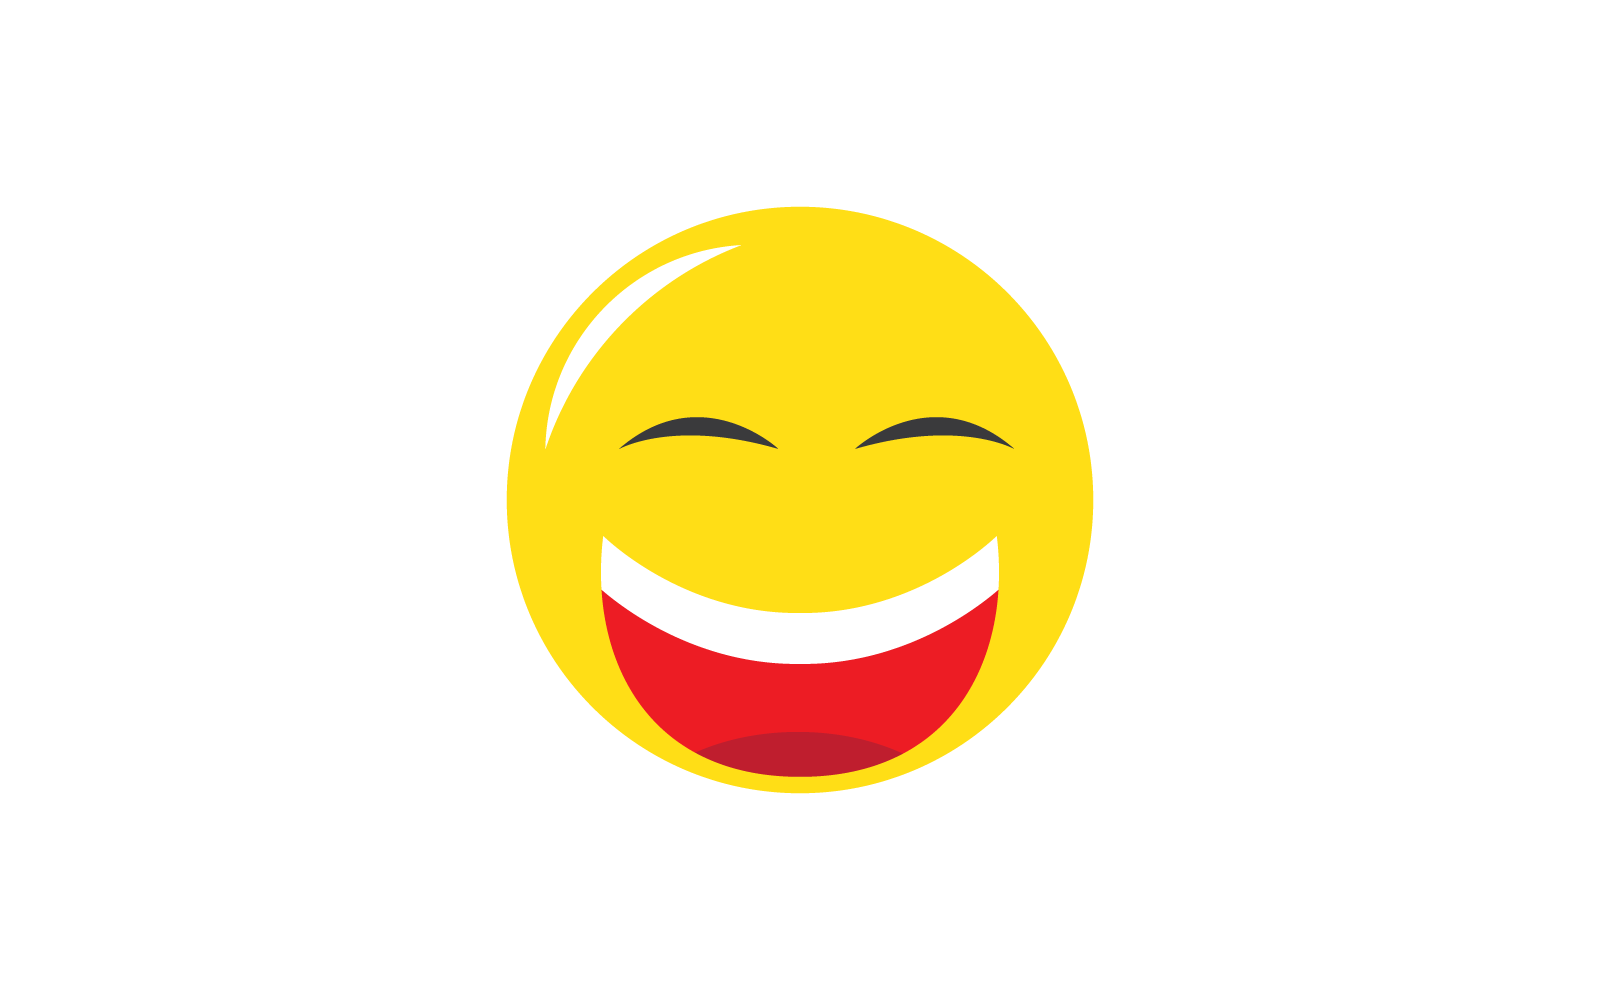 Smile happy face emoticon vector flat design